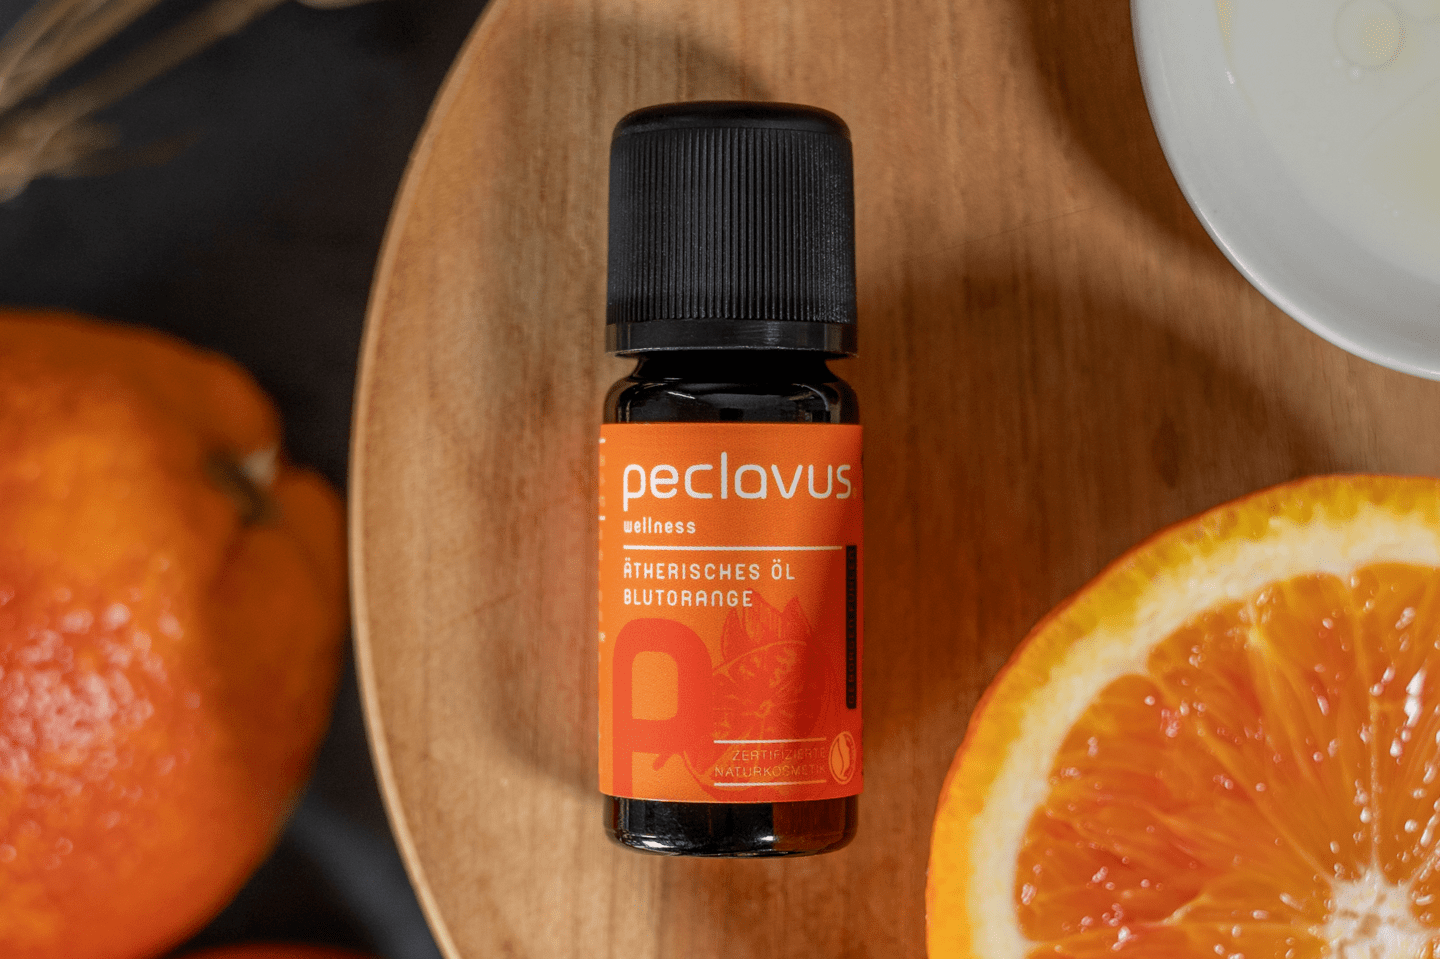 peclavus - Ätherisches Öl Blutorange, 10 ml